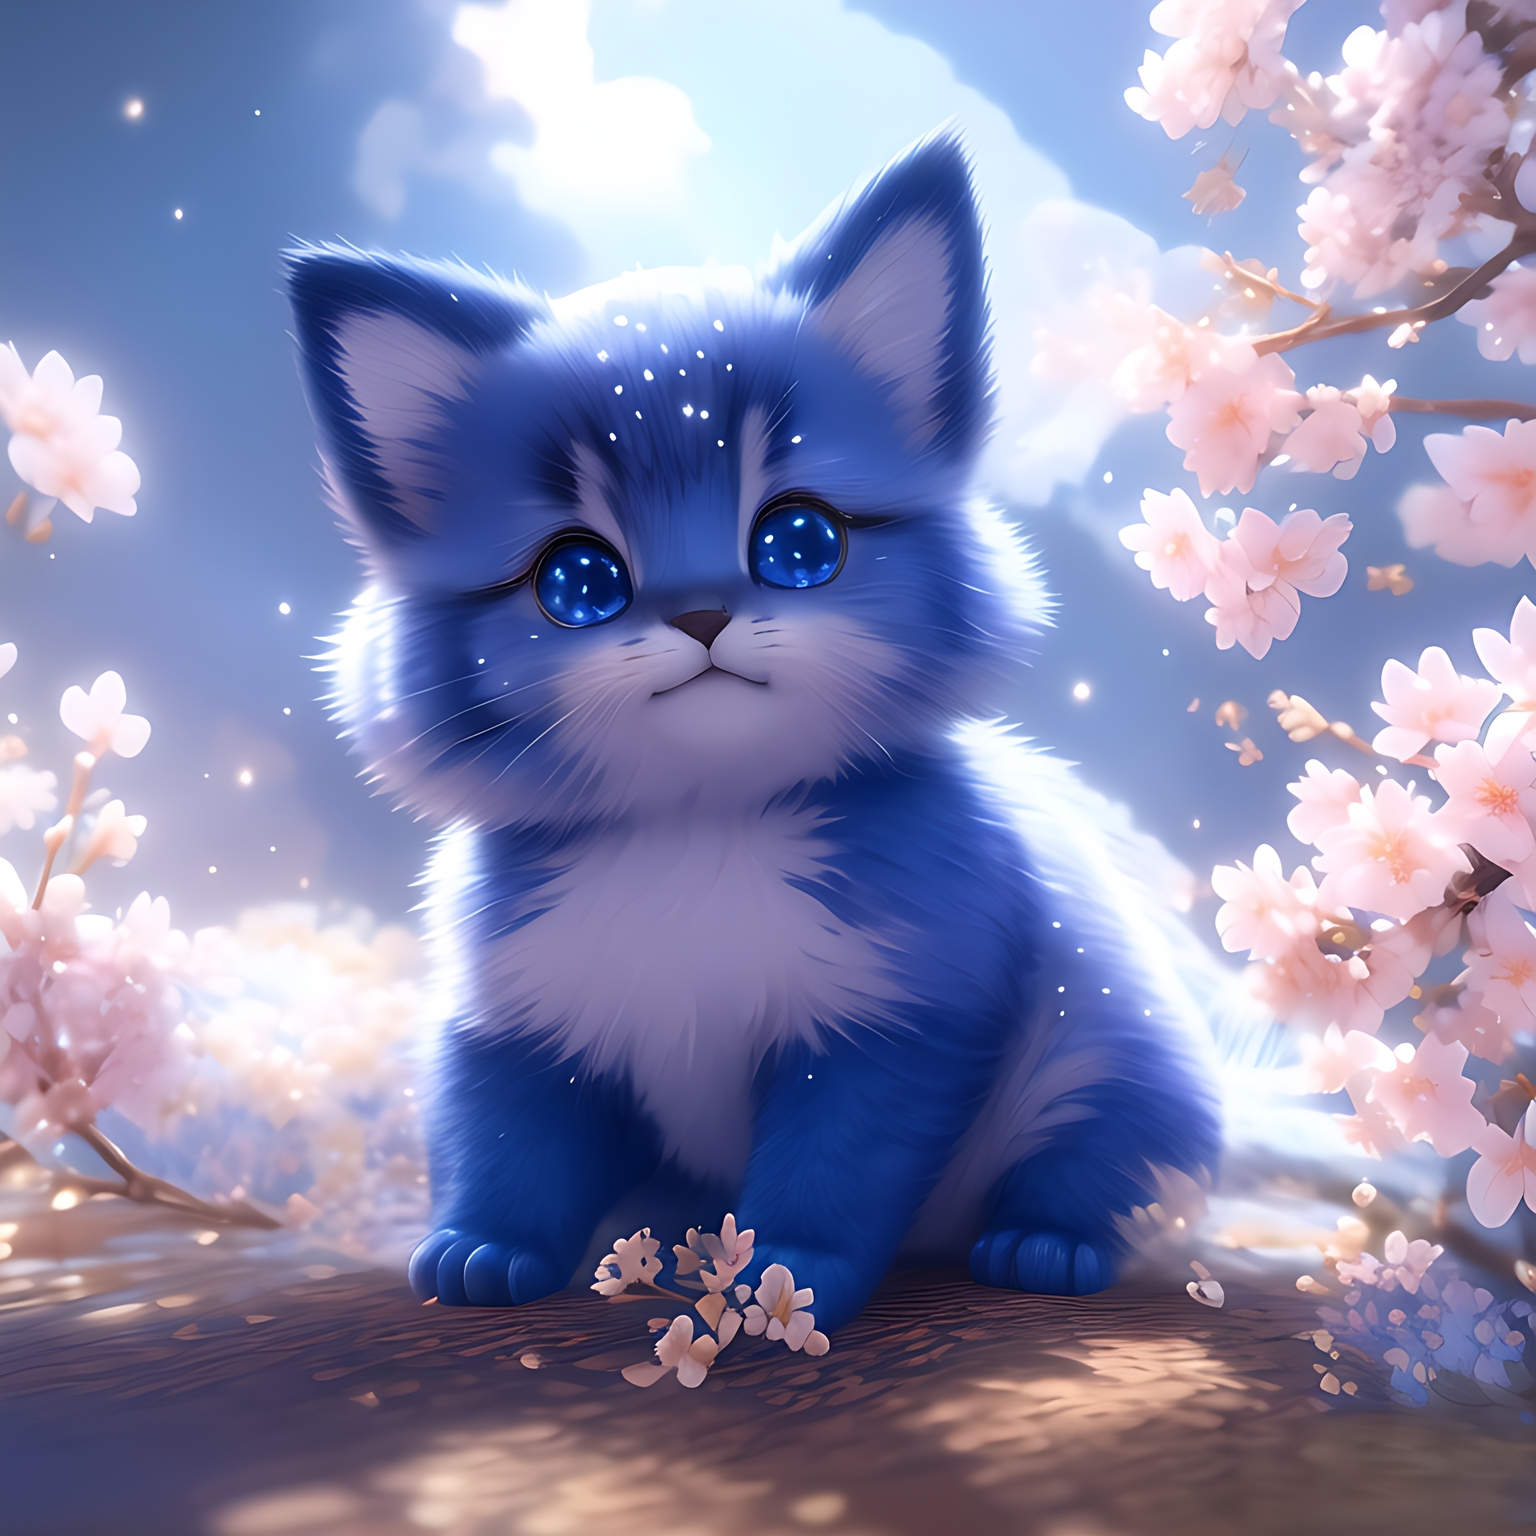 月光之下的蓝白猫,独自在桃花树下